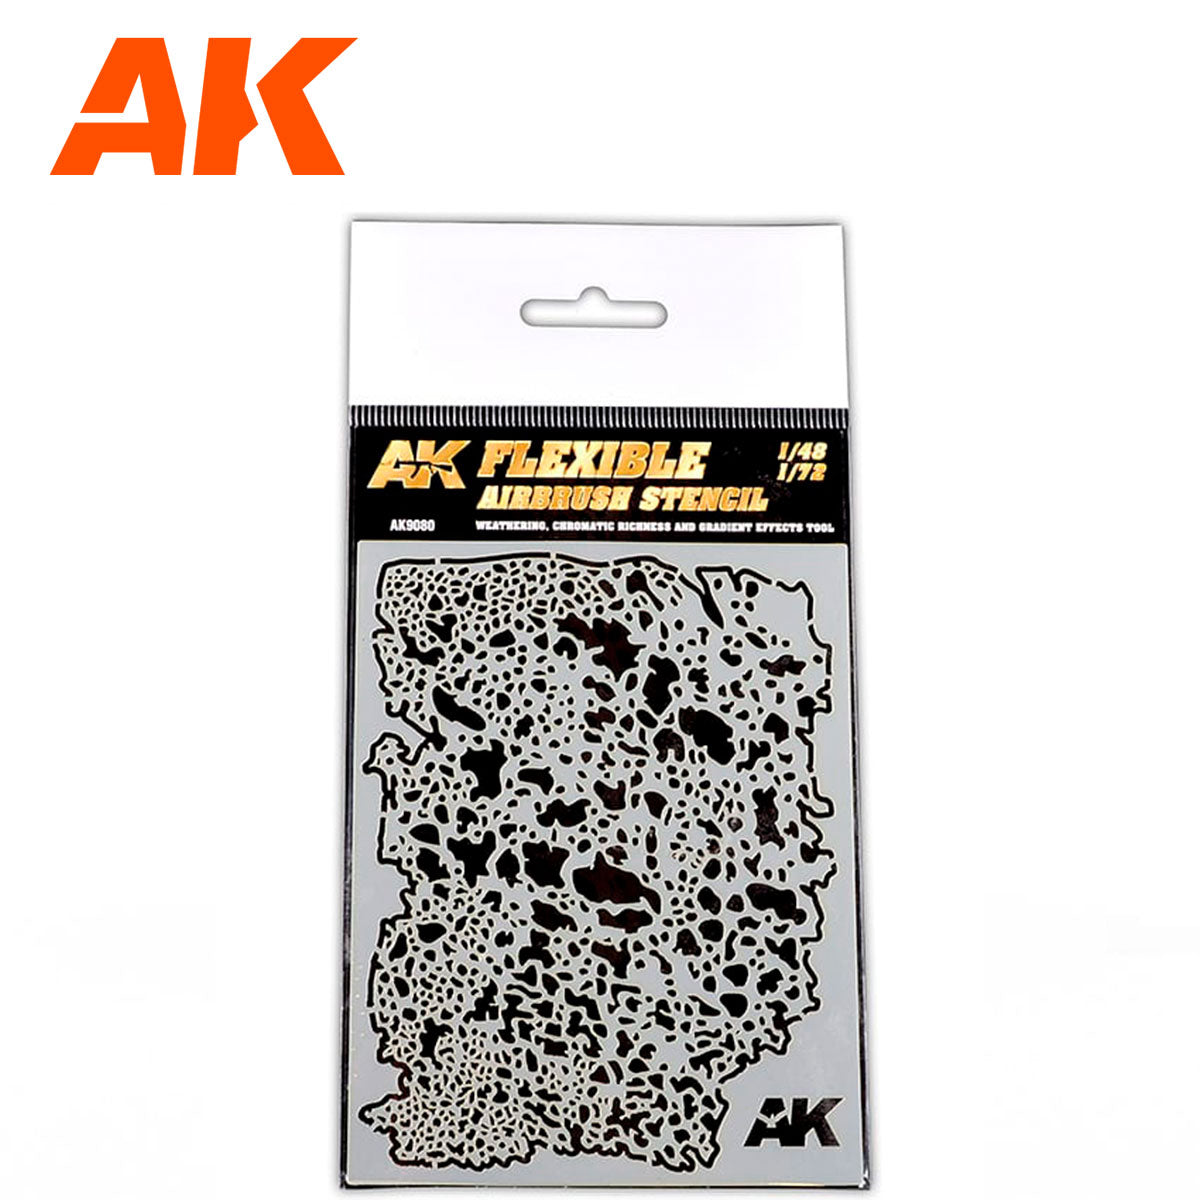 AK9080 - Flexible Airbrush Stencil (1/48-1/72)